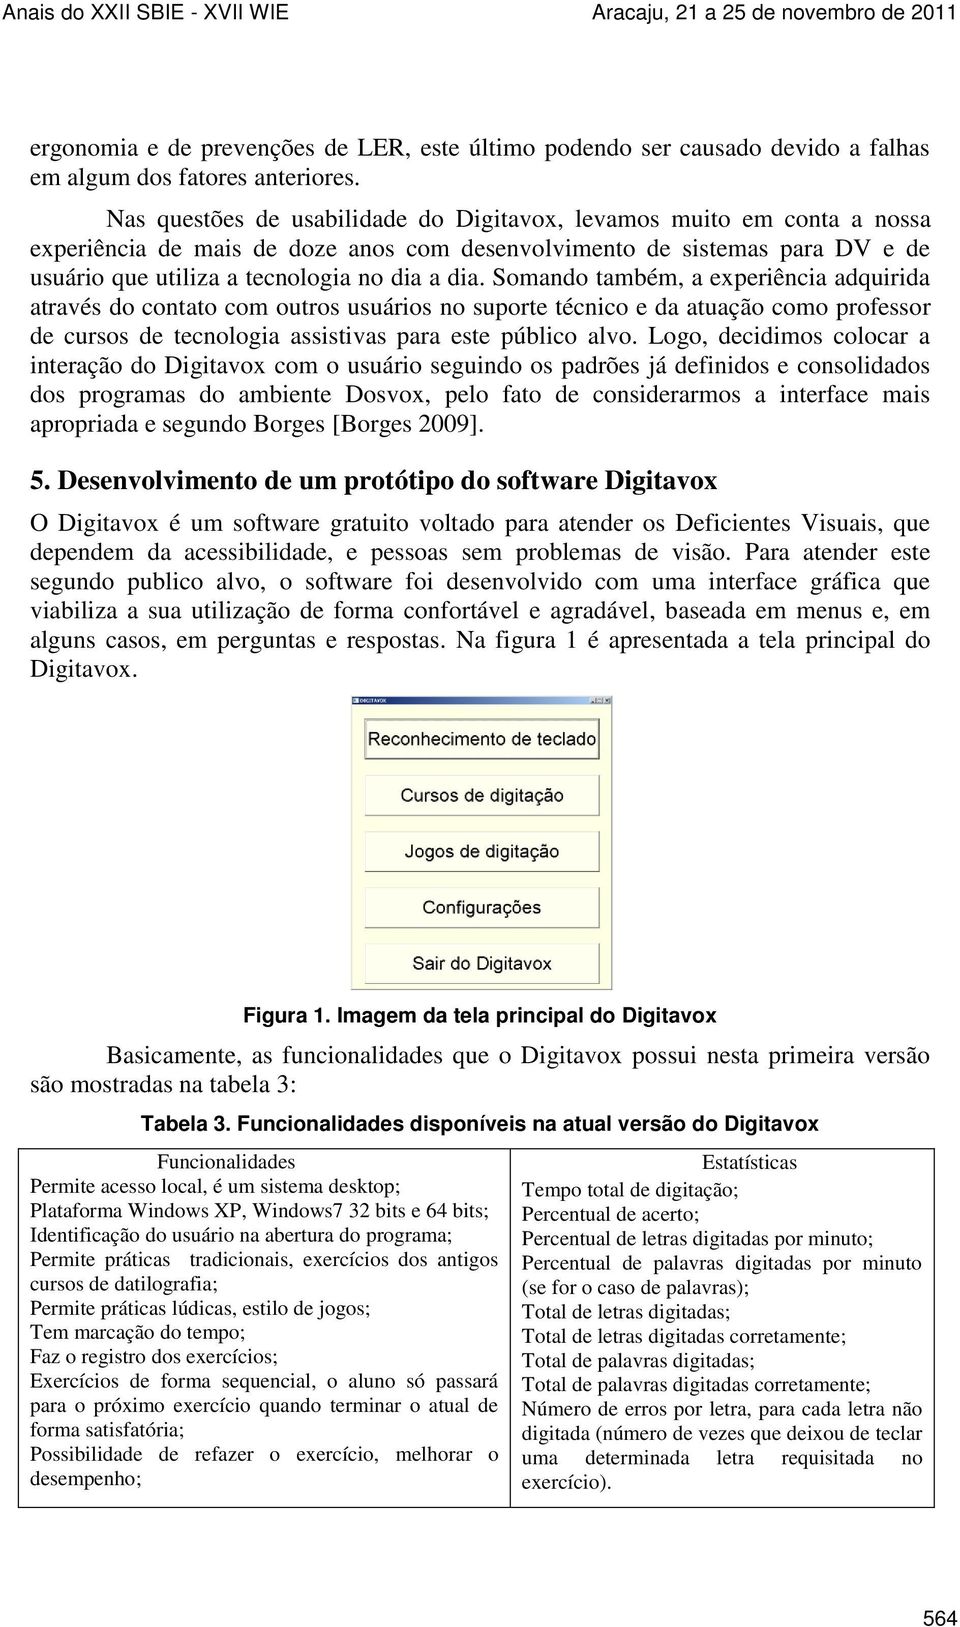 Digitavox: Curso de digitaÃ§Ã£o para deficientes visuais - NCE/UFRJ